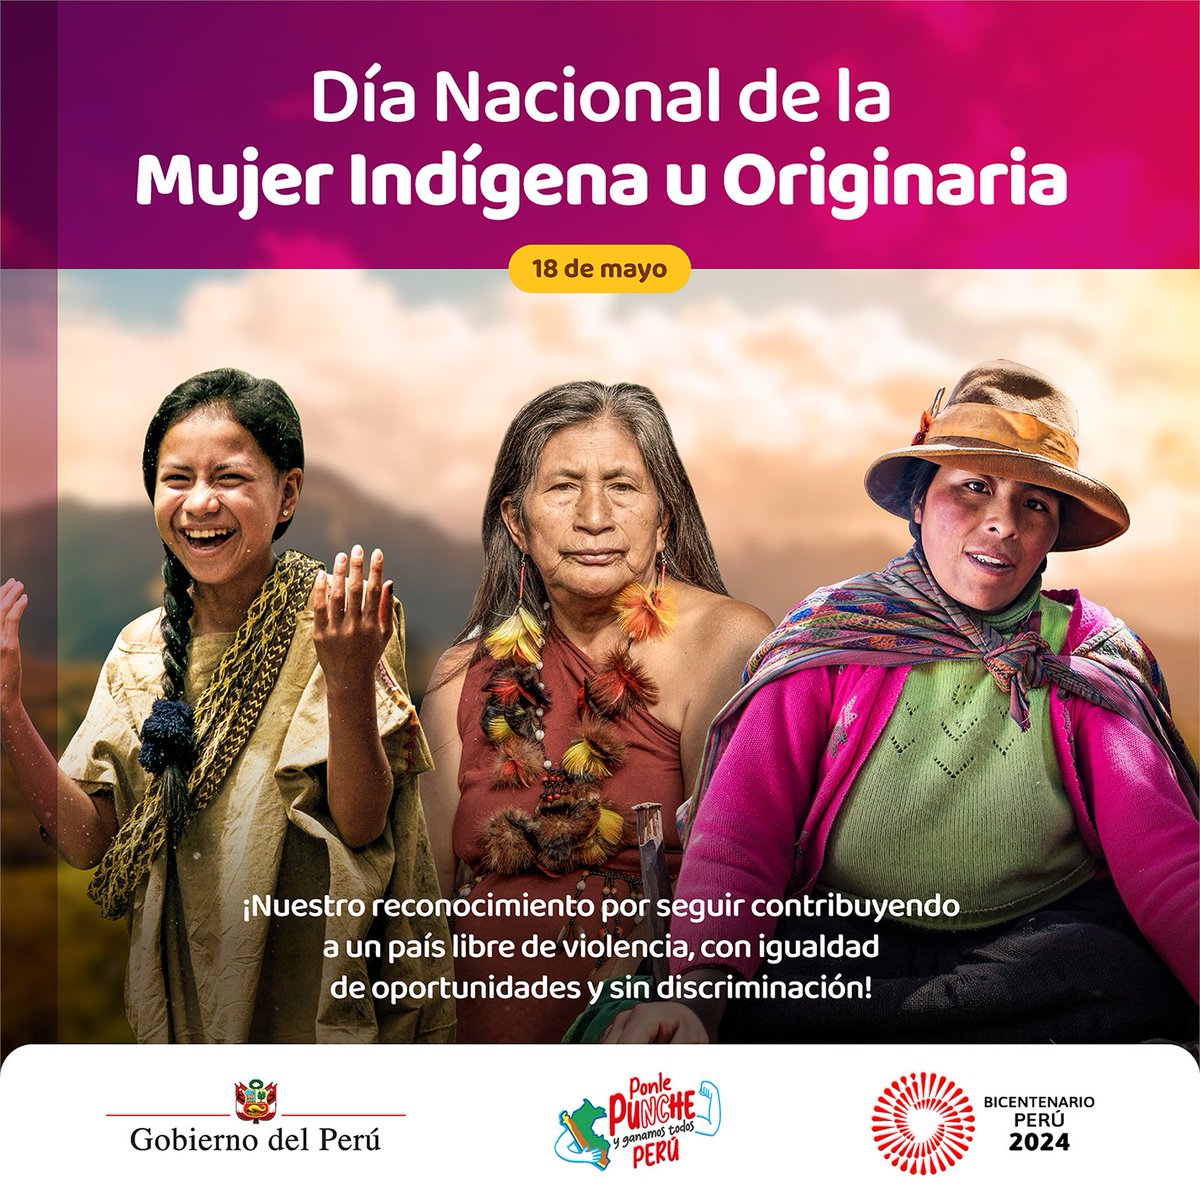 Día Nacional de la Mujer Indígena | El Perú cuenta con más de 3 millones de peruanas que son #OrgullosamenteIndígenas, ya que se autoidentifican como parte de estos pueblos. El Gobierno reafirma su compromiso en construir y valorar la diversidad cultural, sin estereotipos.